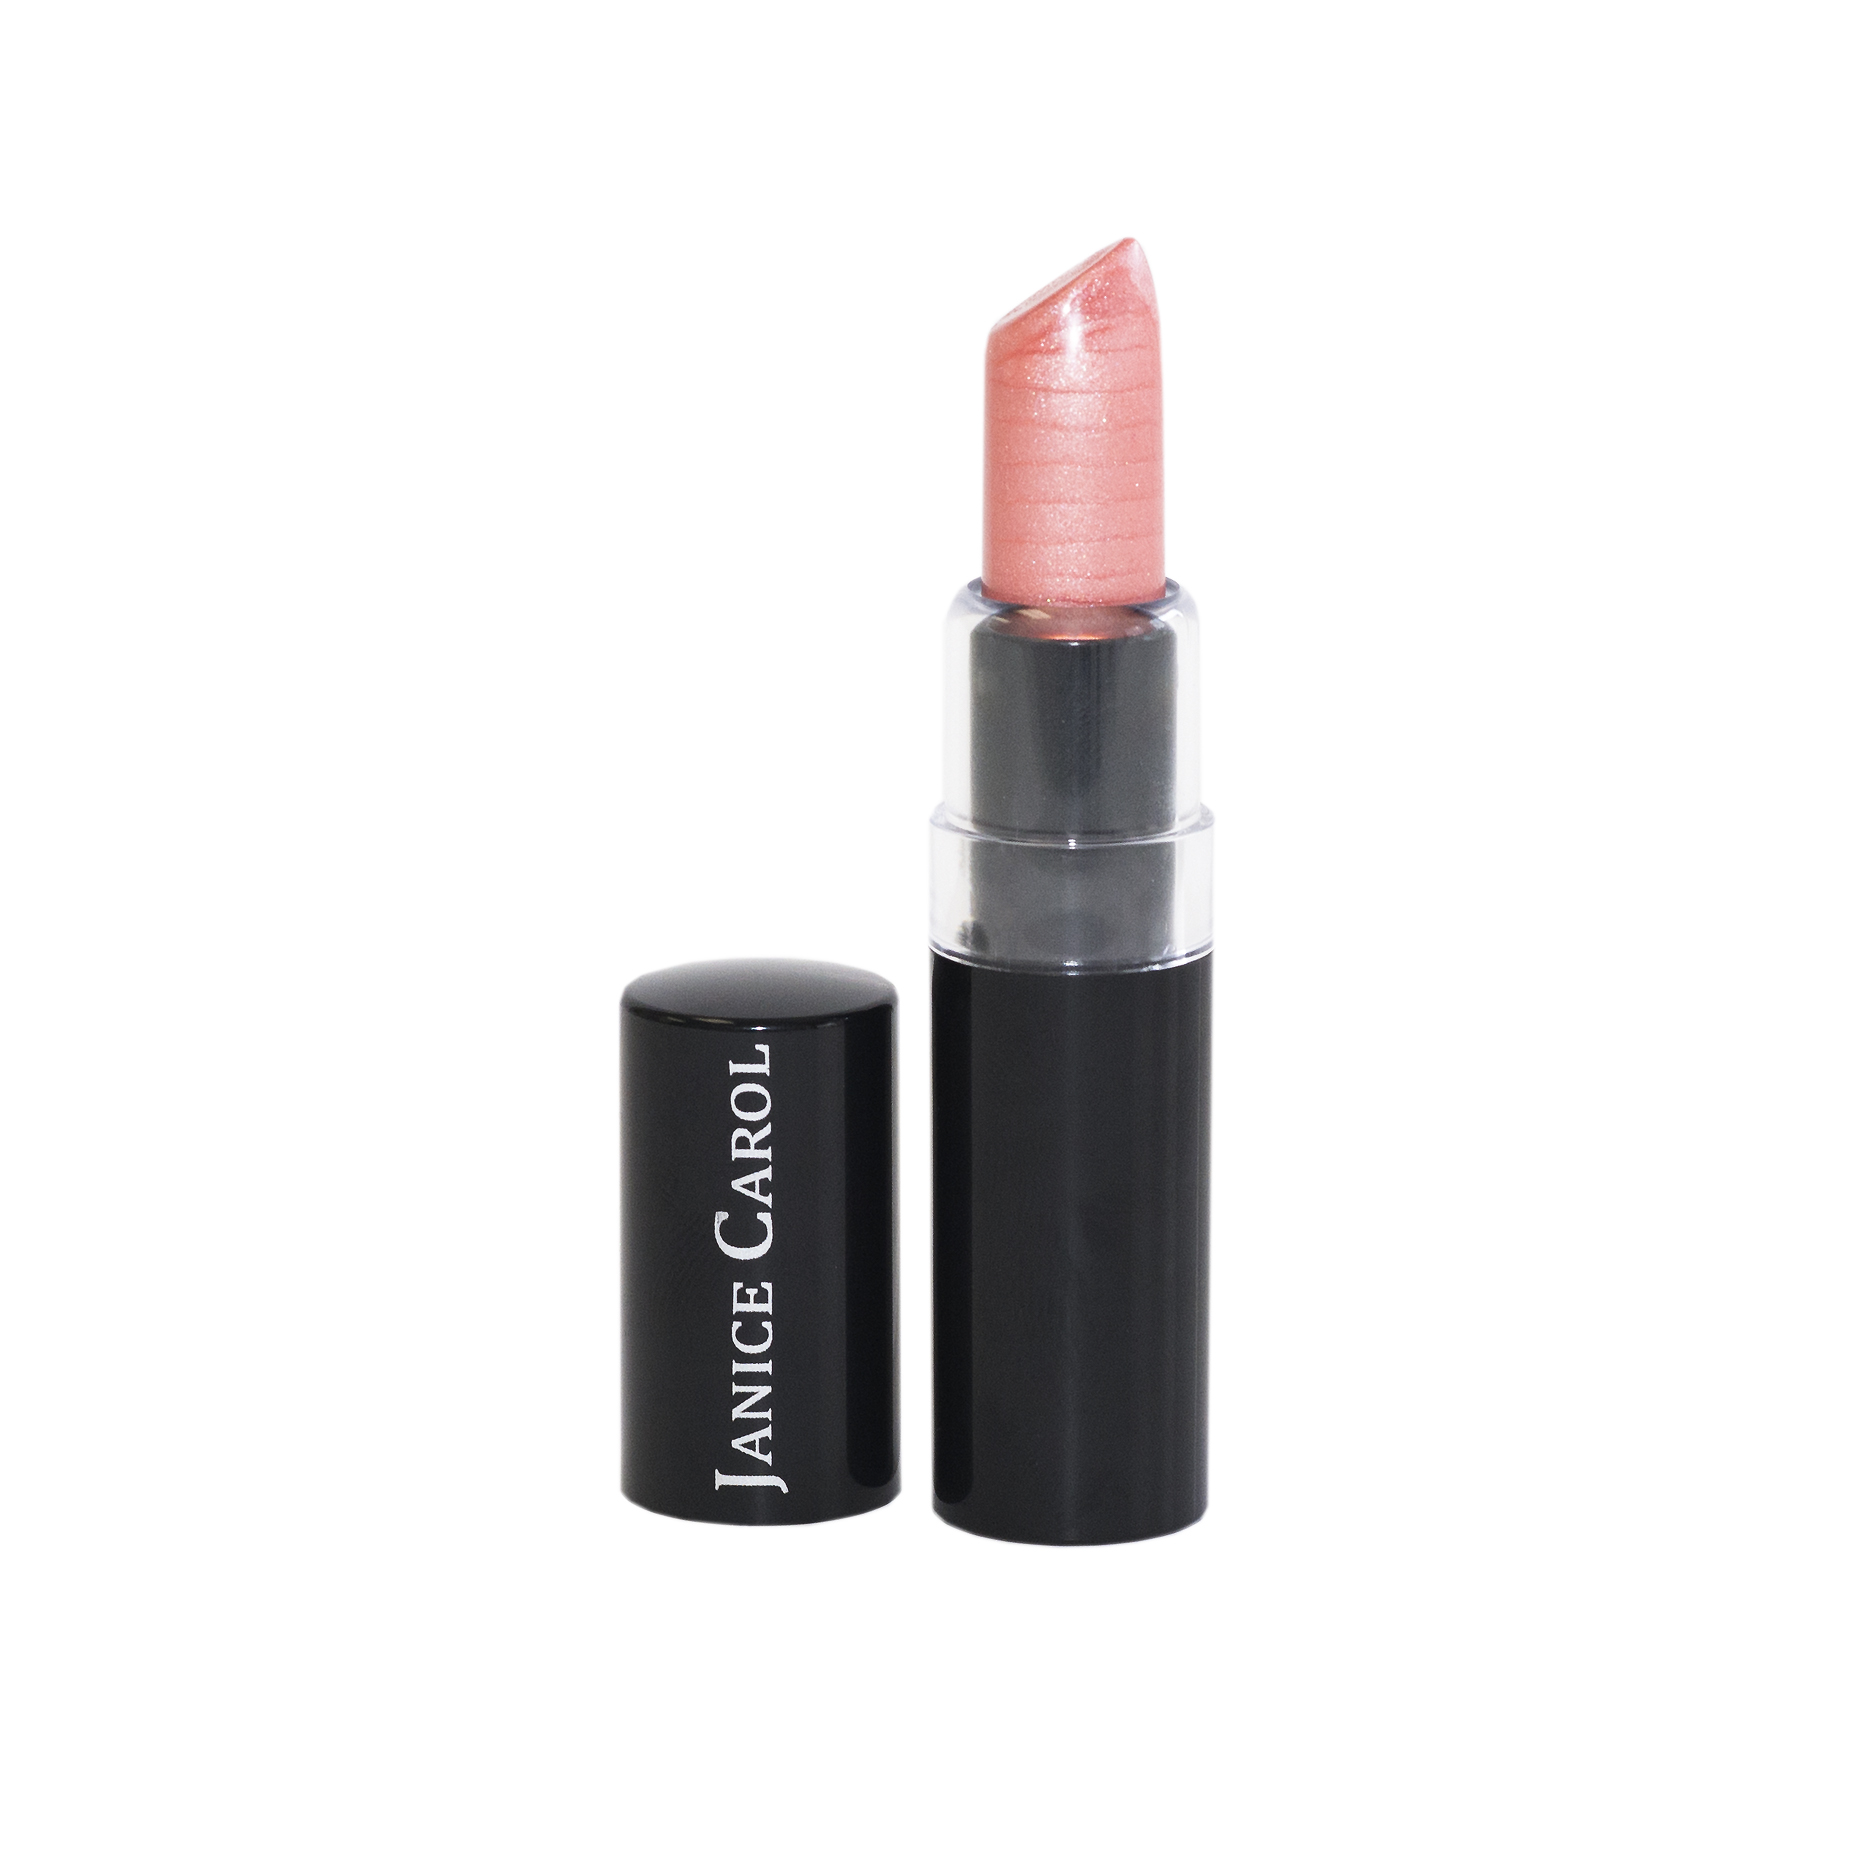 Paraben free Lipstick